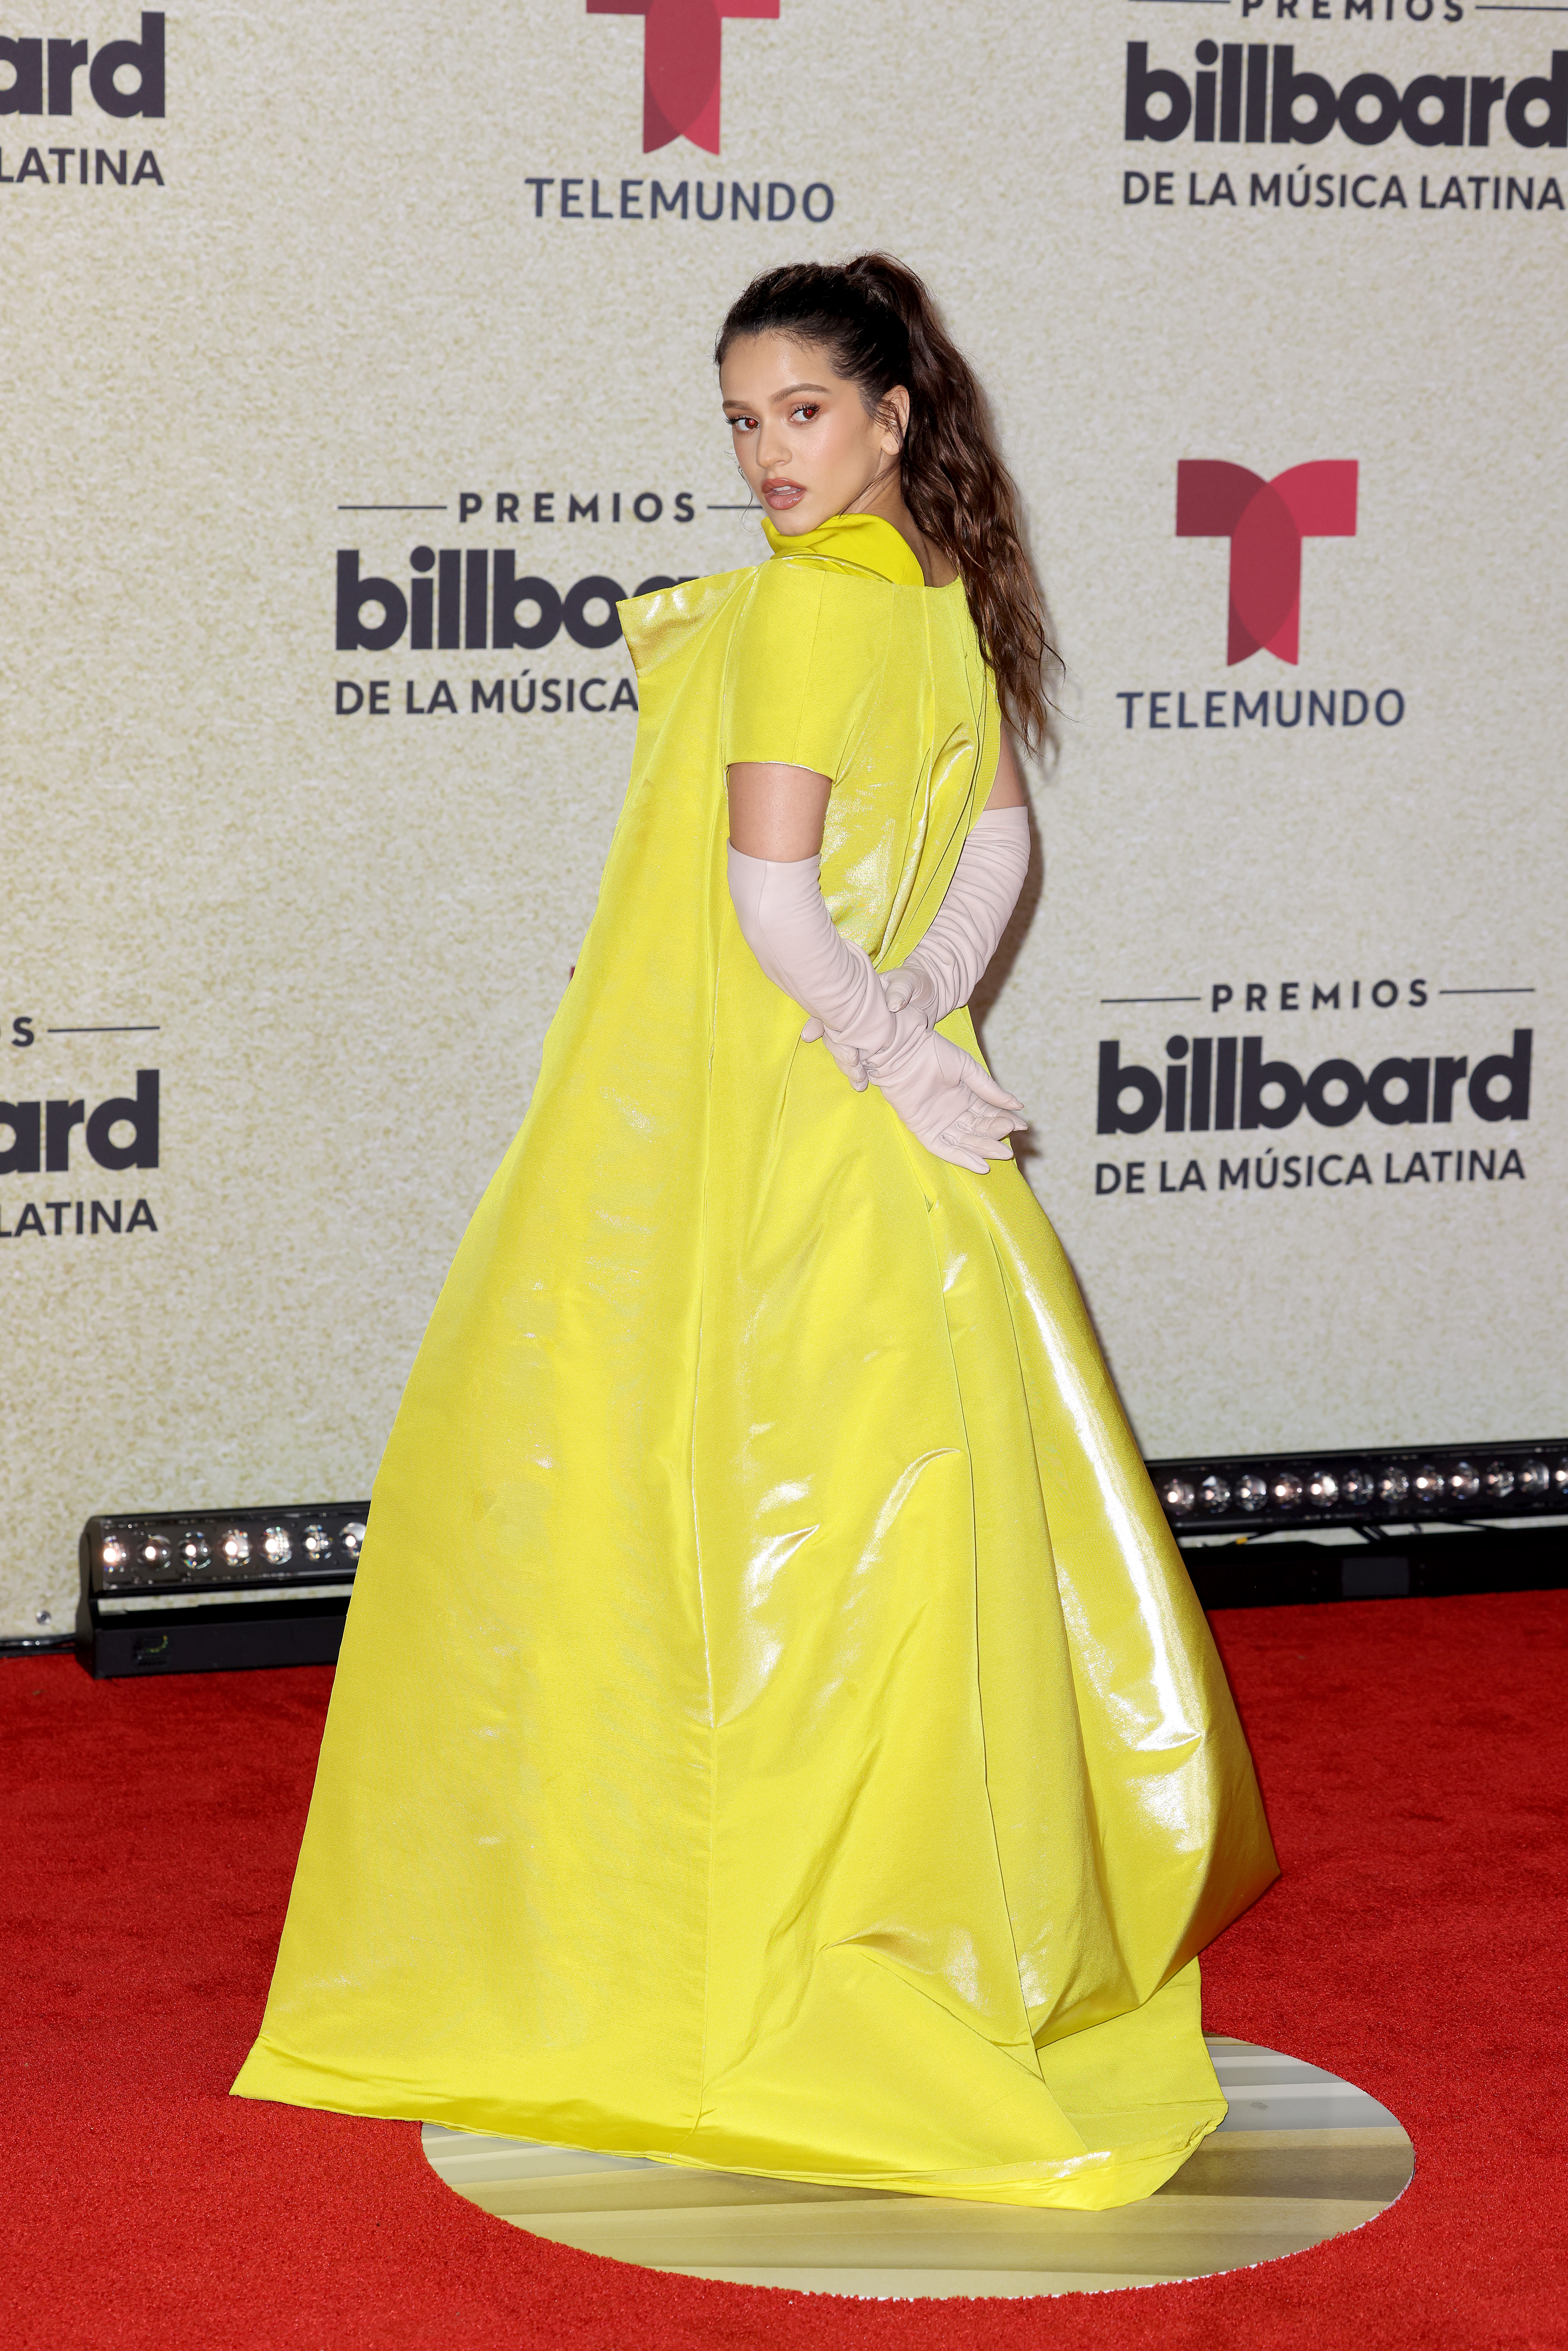 Rosalía at the 2021 Billboard Awards.